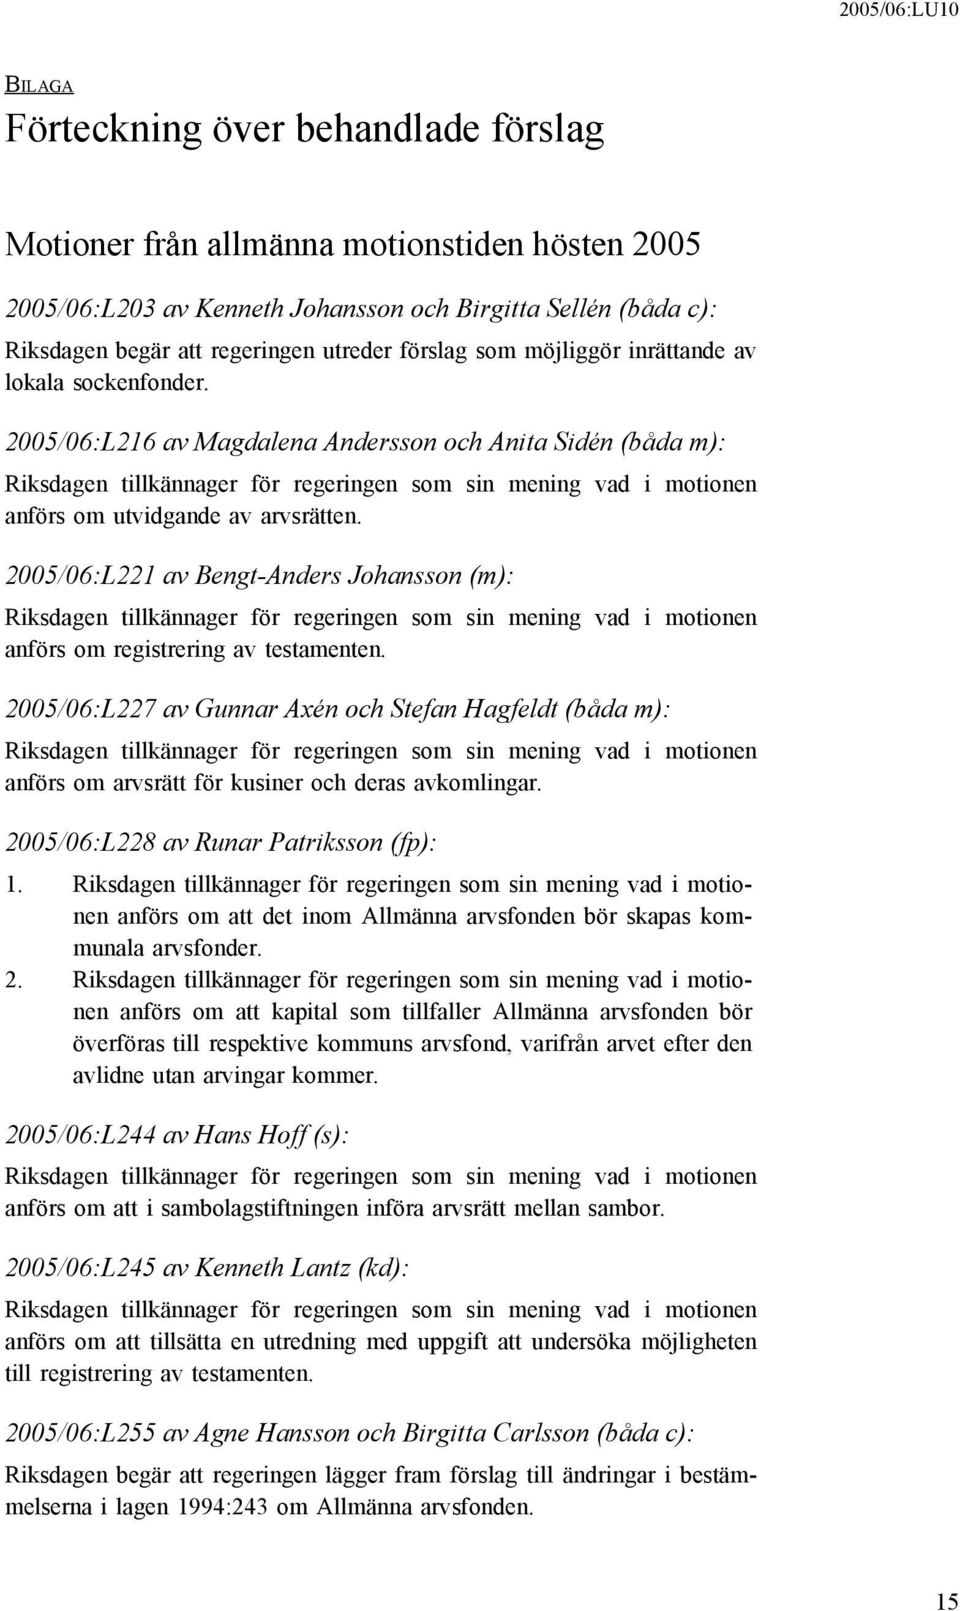 2005/06:L221 av Bengt-Anders Johansson (m): anförs om registrering av testamenten. 2005/06:L227 av Gunnar Axén och Stefan Hagfeldt (båda m): anförs om arvsrätt för kusiner och deras avkomlingar.